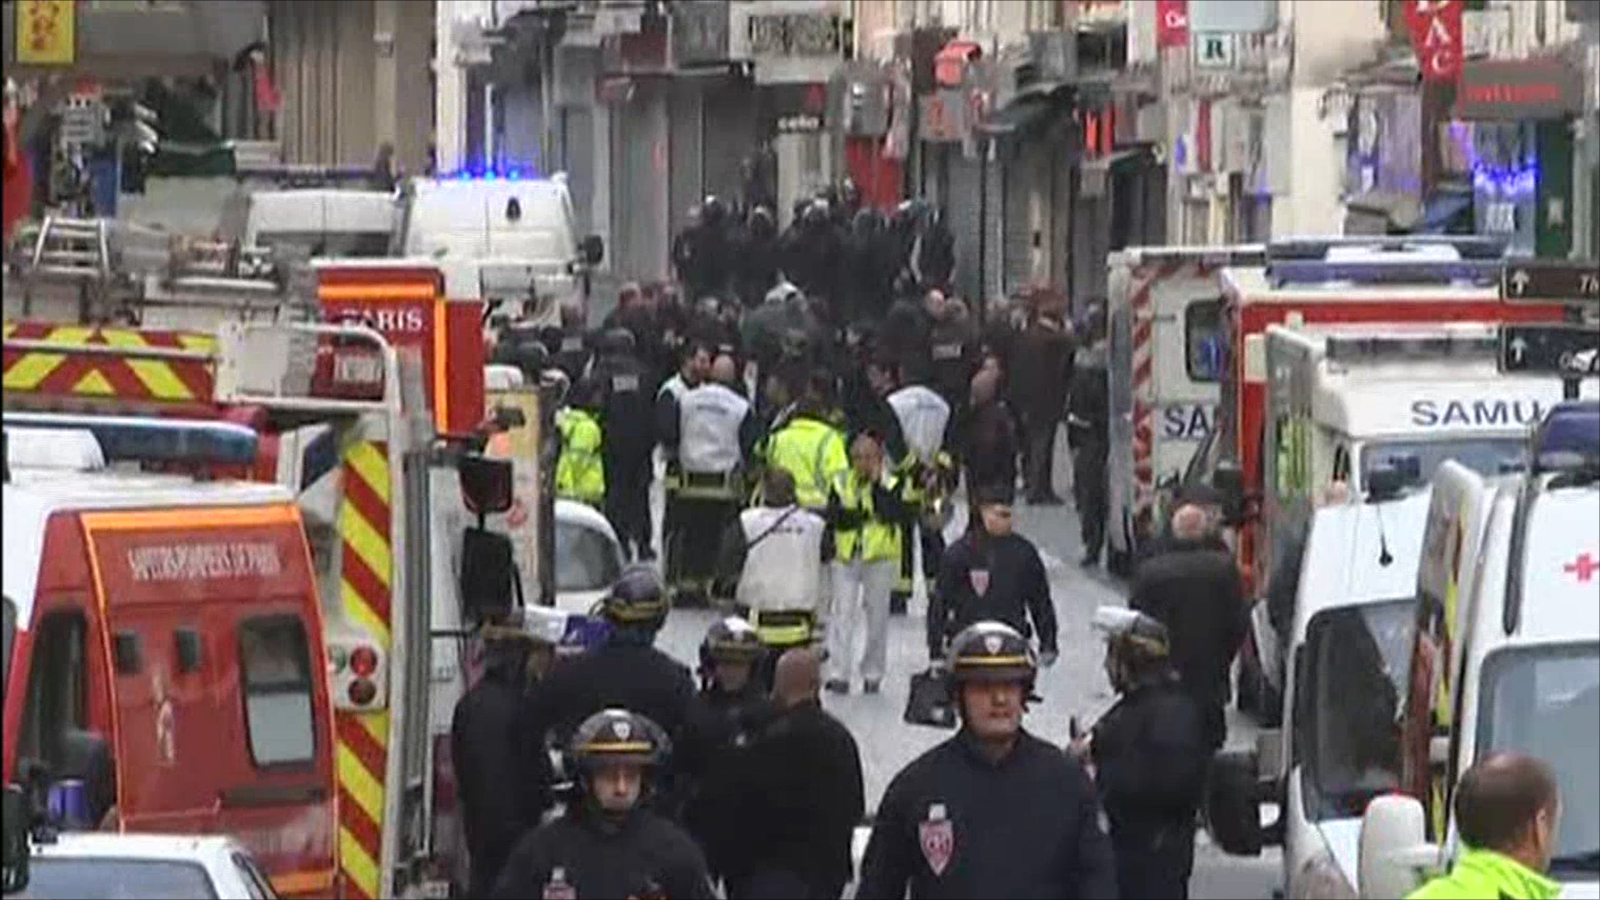 ‪فرنسا تطالب بمواجهة الإرهاب وأزمة اللاجئين‬ فرنسا تطالب بمواجهة الإرهاب وأزمة اللاجئين (الجزيرة)